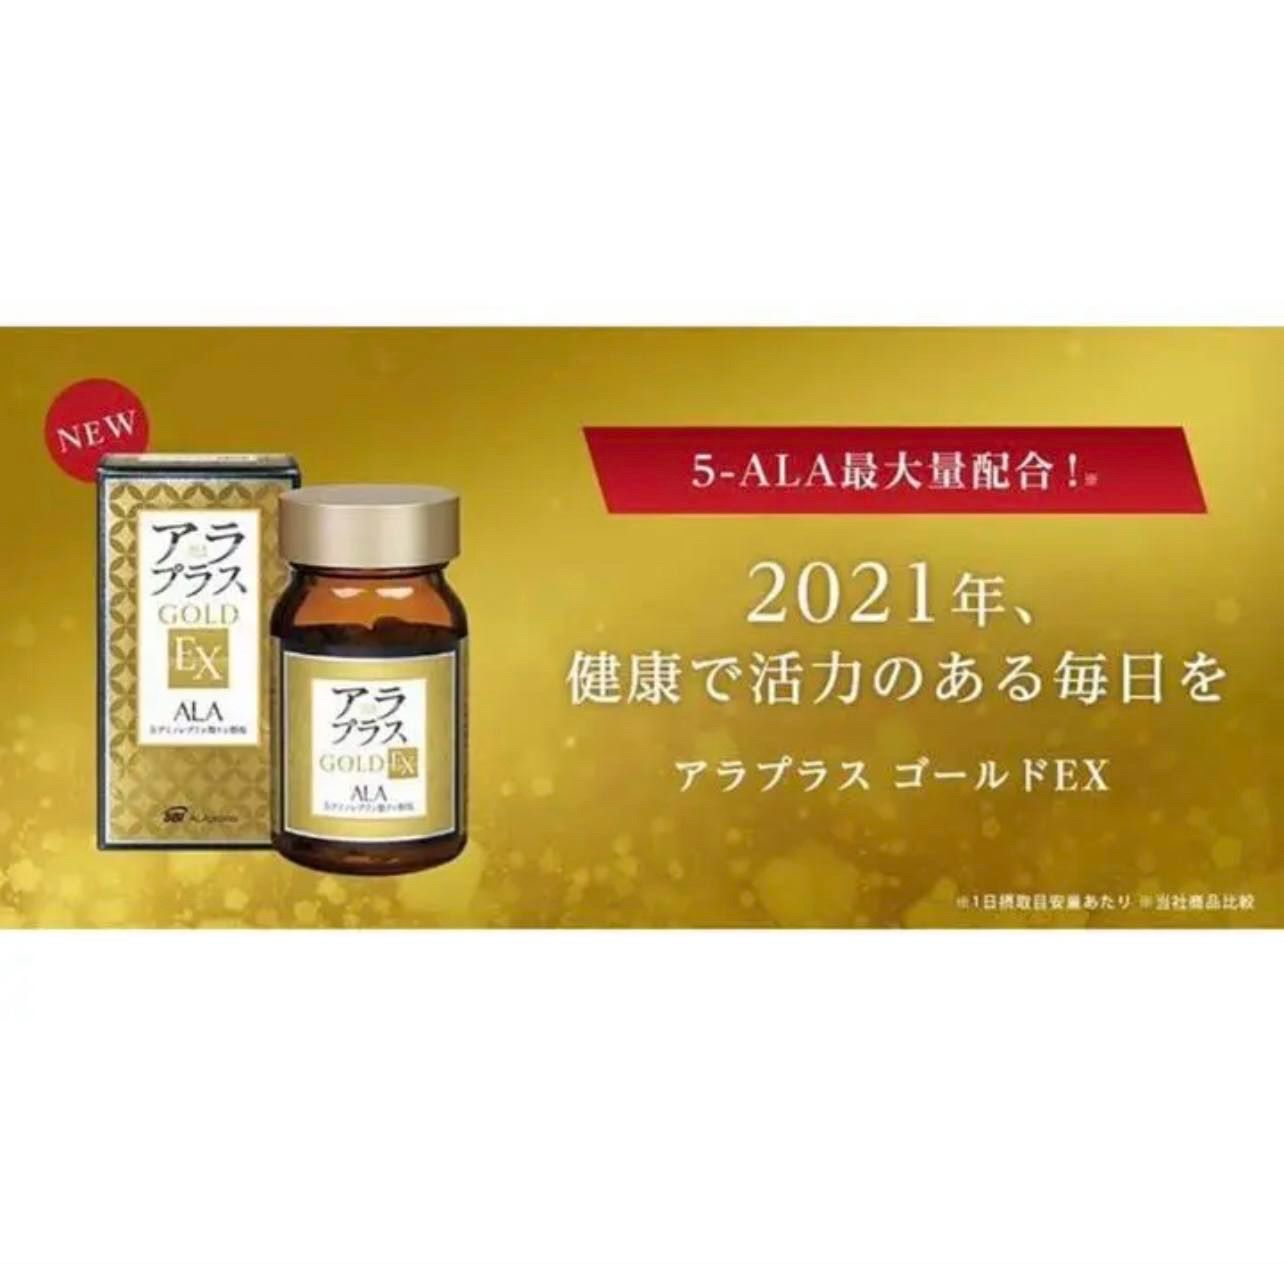 アラプラス ゴールドEX 60粒 ALA 5-アミノレブリン酸 新品20点セット 健康用品 アウトレット 通販